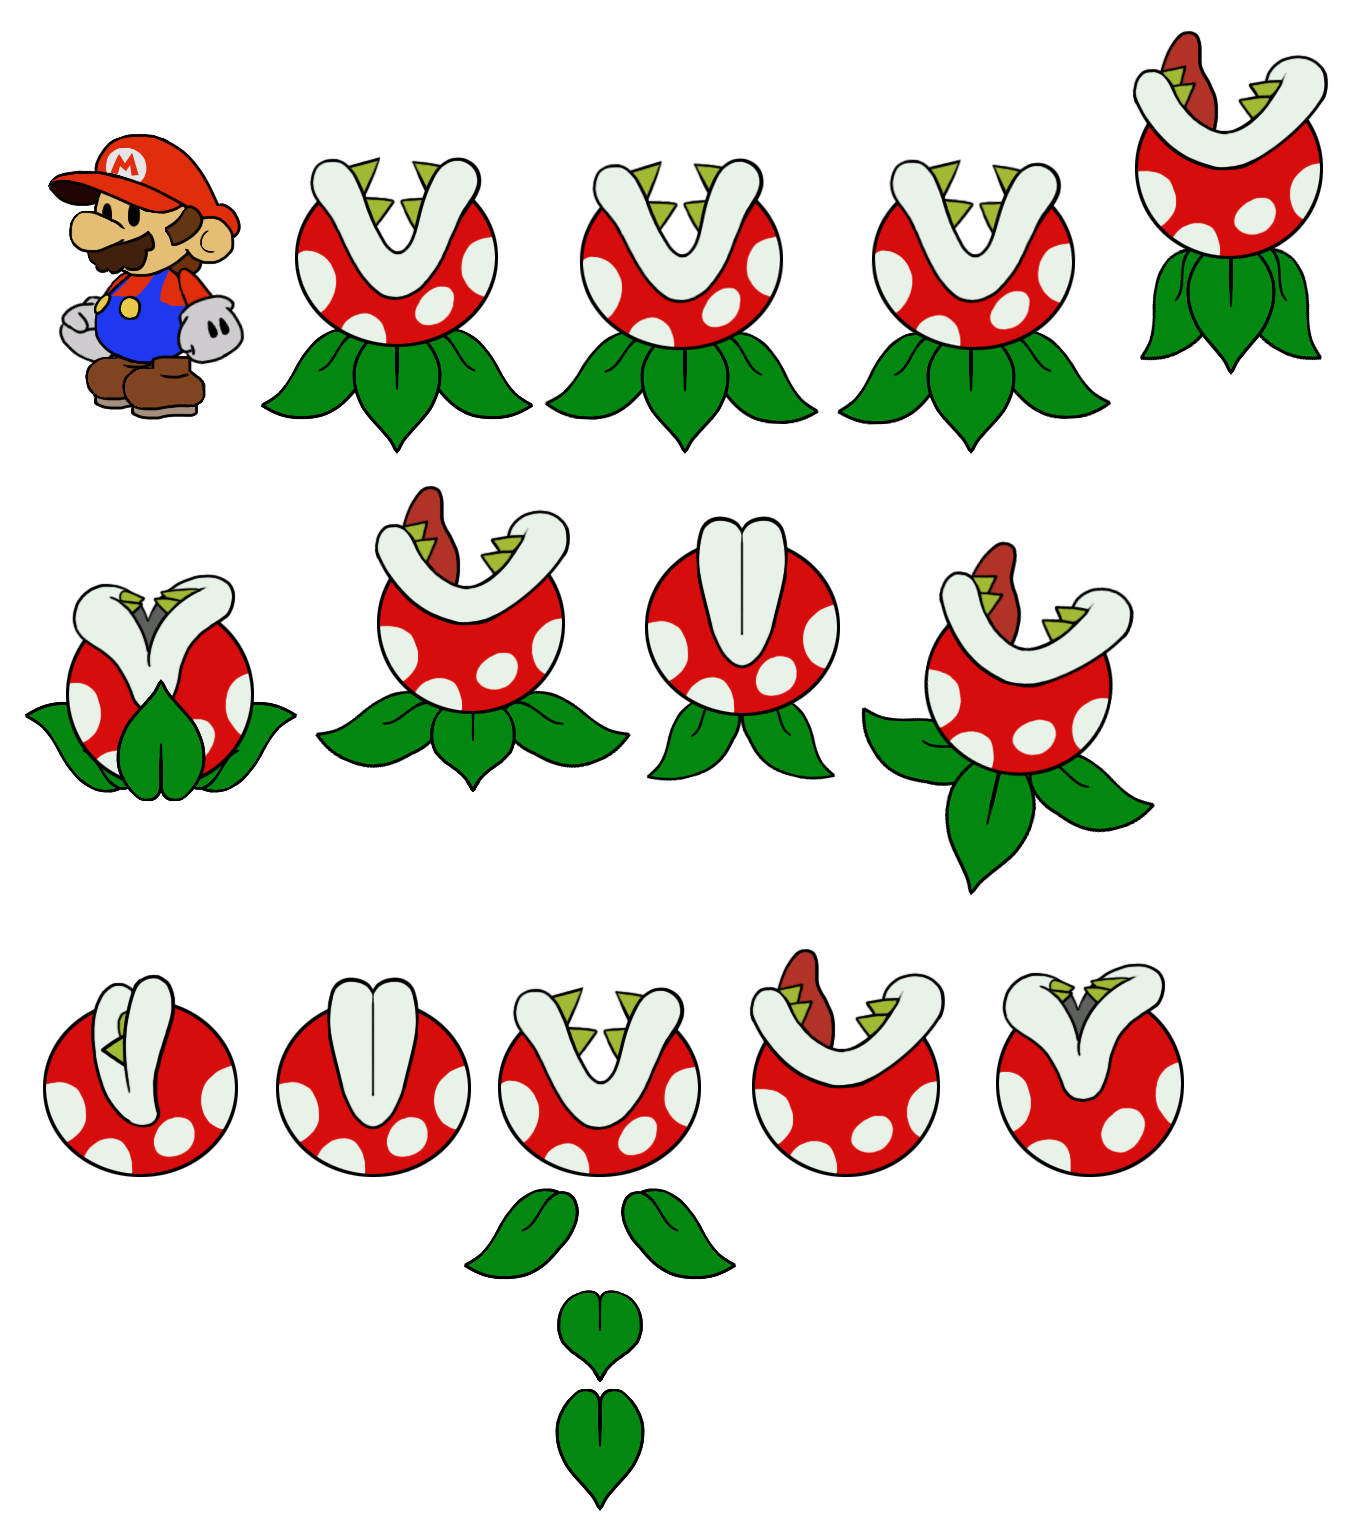 Mario Customs - Jumping Piranha (Paper Mario-Style, Classic)